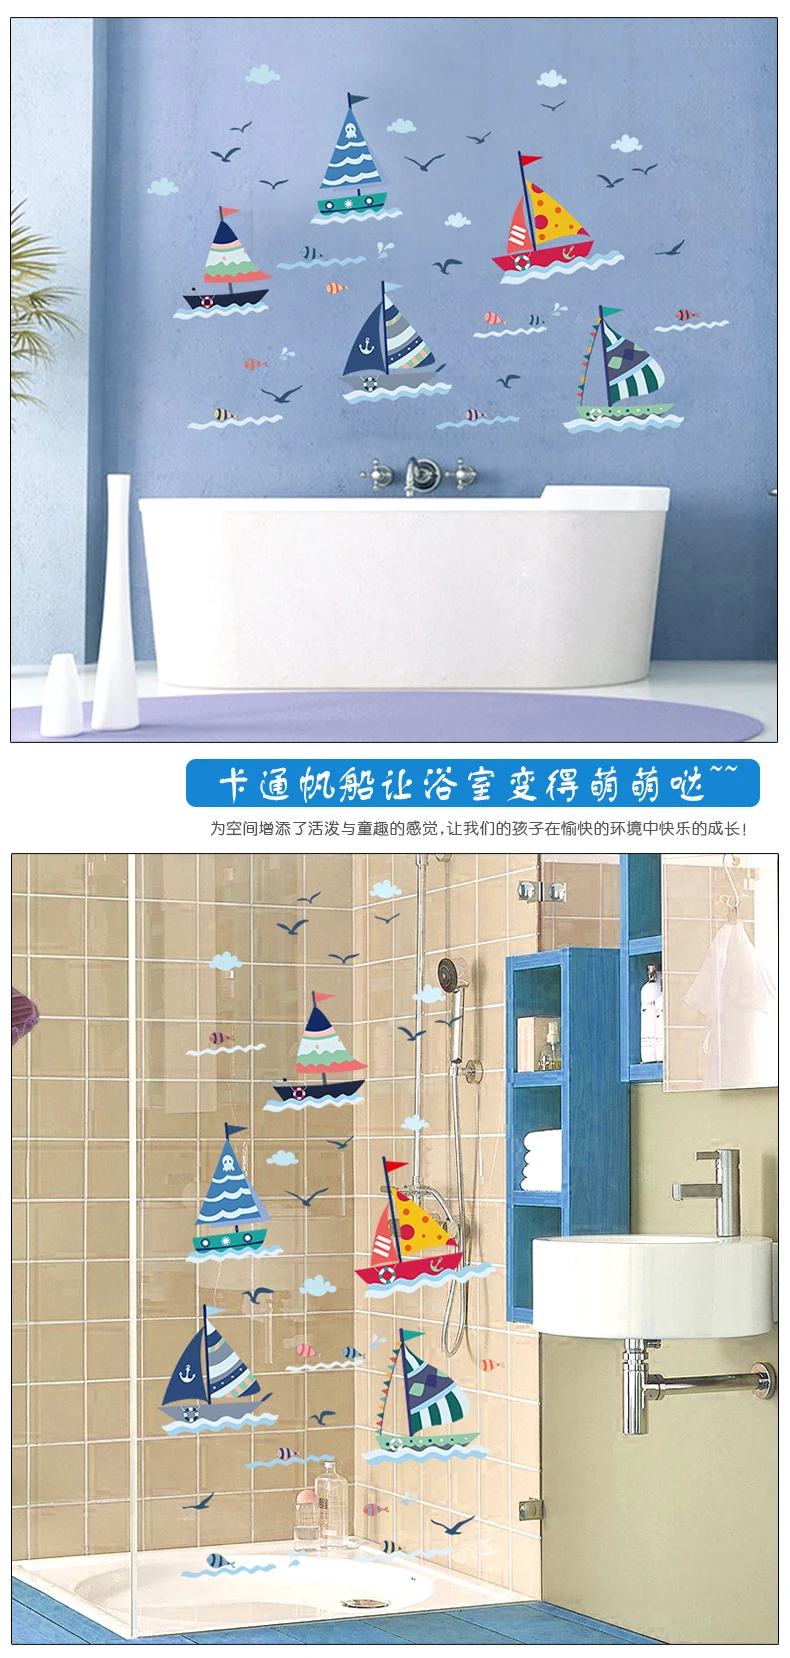 Zs стикер водонепроницаемый стикер на стену лодка домашний декор парусник Наклейка на стену в ванную Фреска для детской комнаты ванной